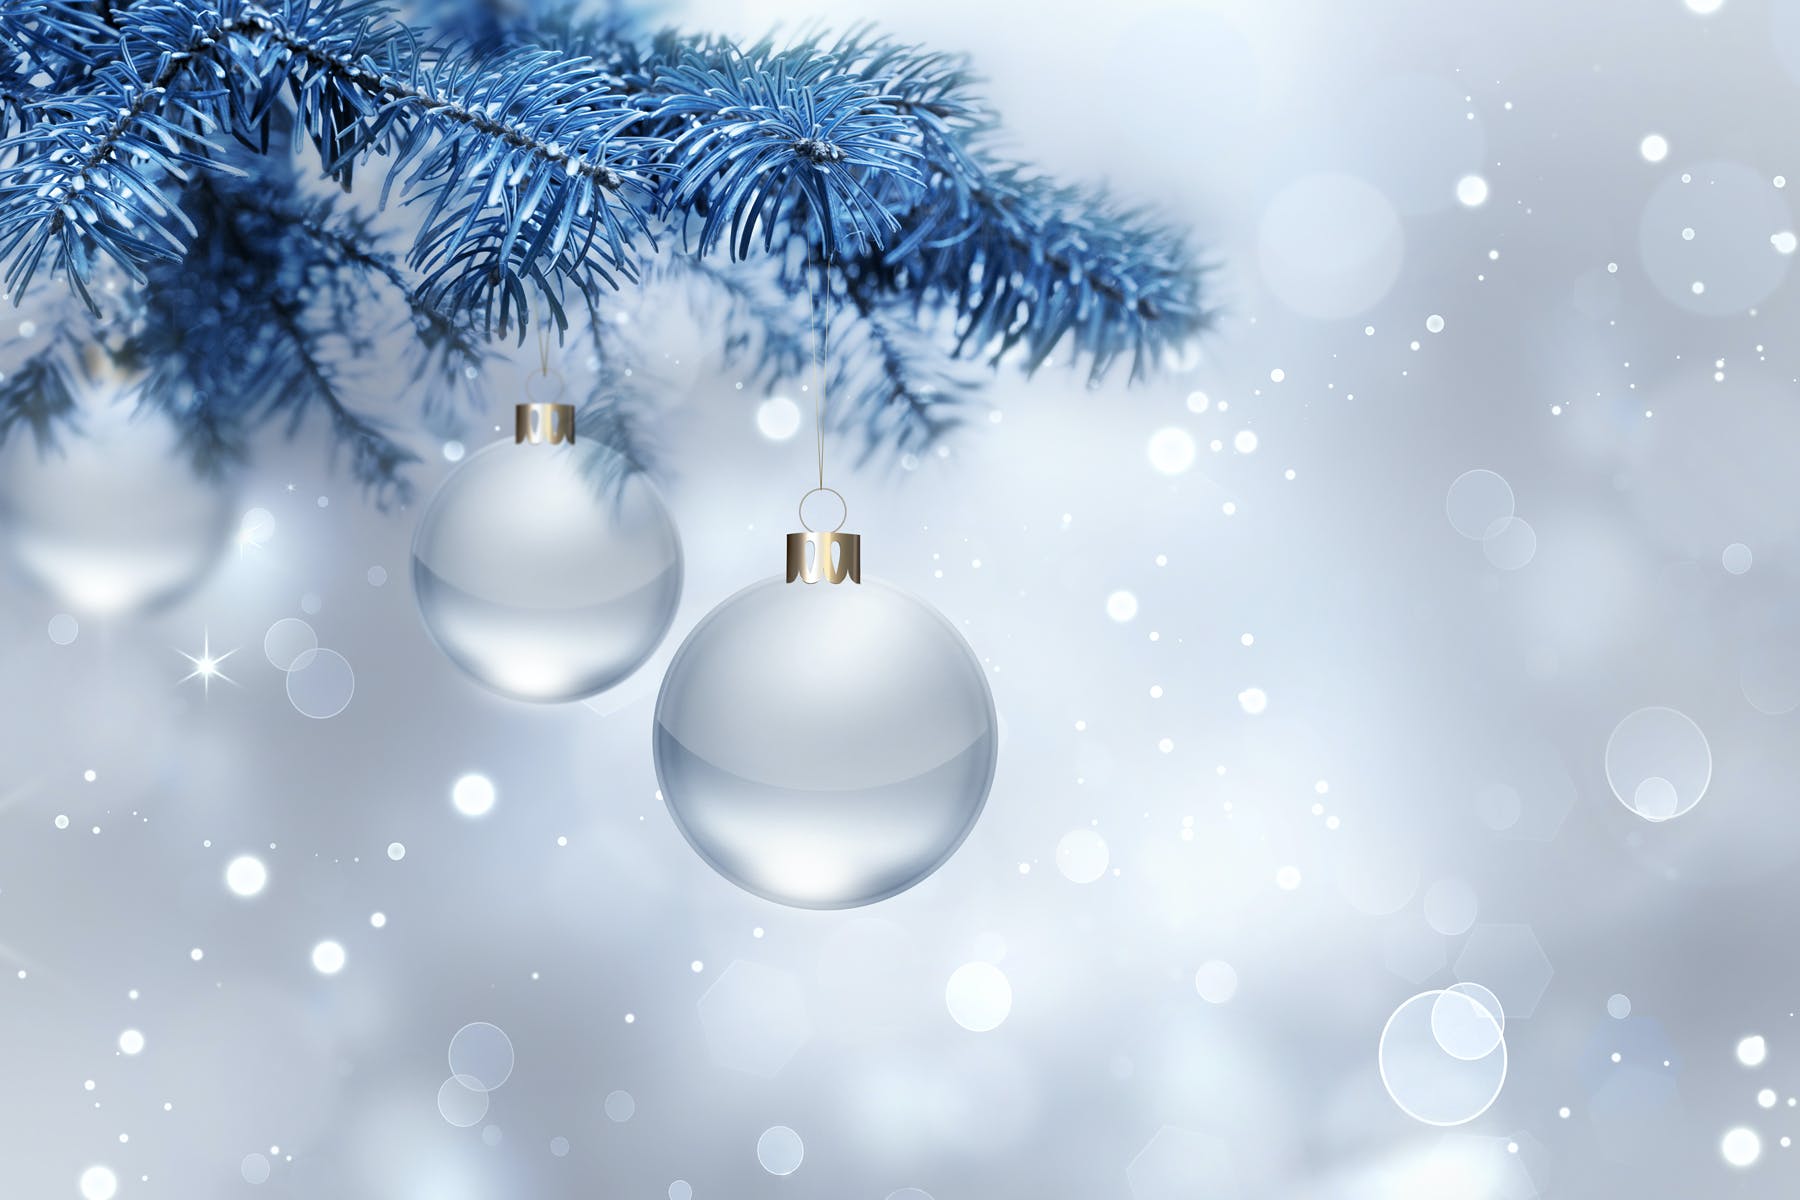 圣诞节高清背景图银色水晶球素材 silver Christmas background设计素材模板